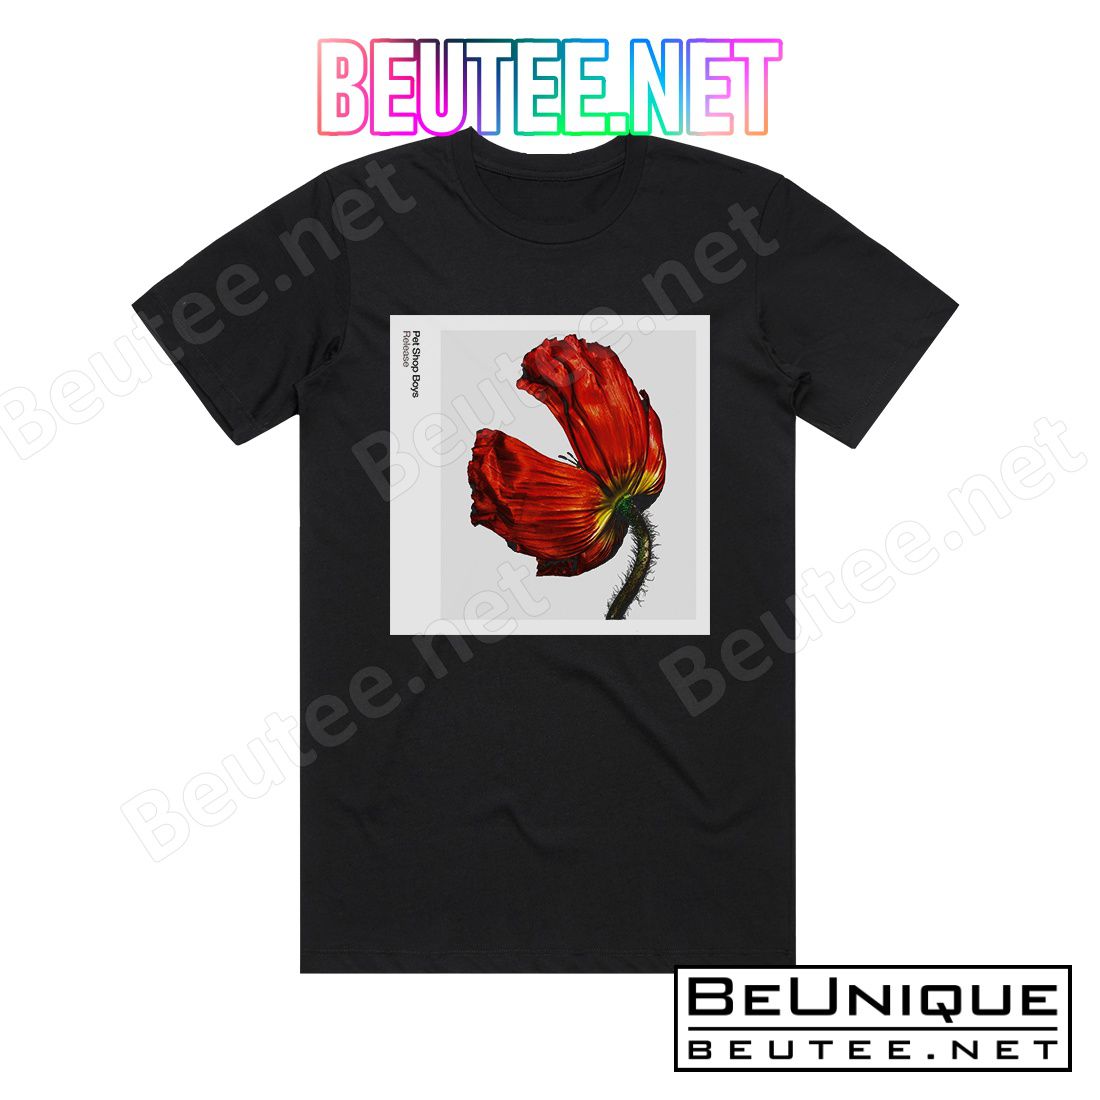 Pet Shop Boys Release 2 Album Cover T-Shirt